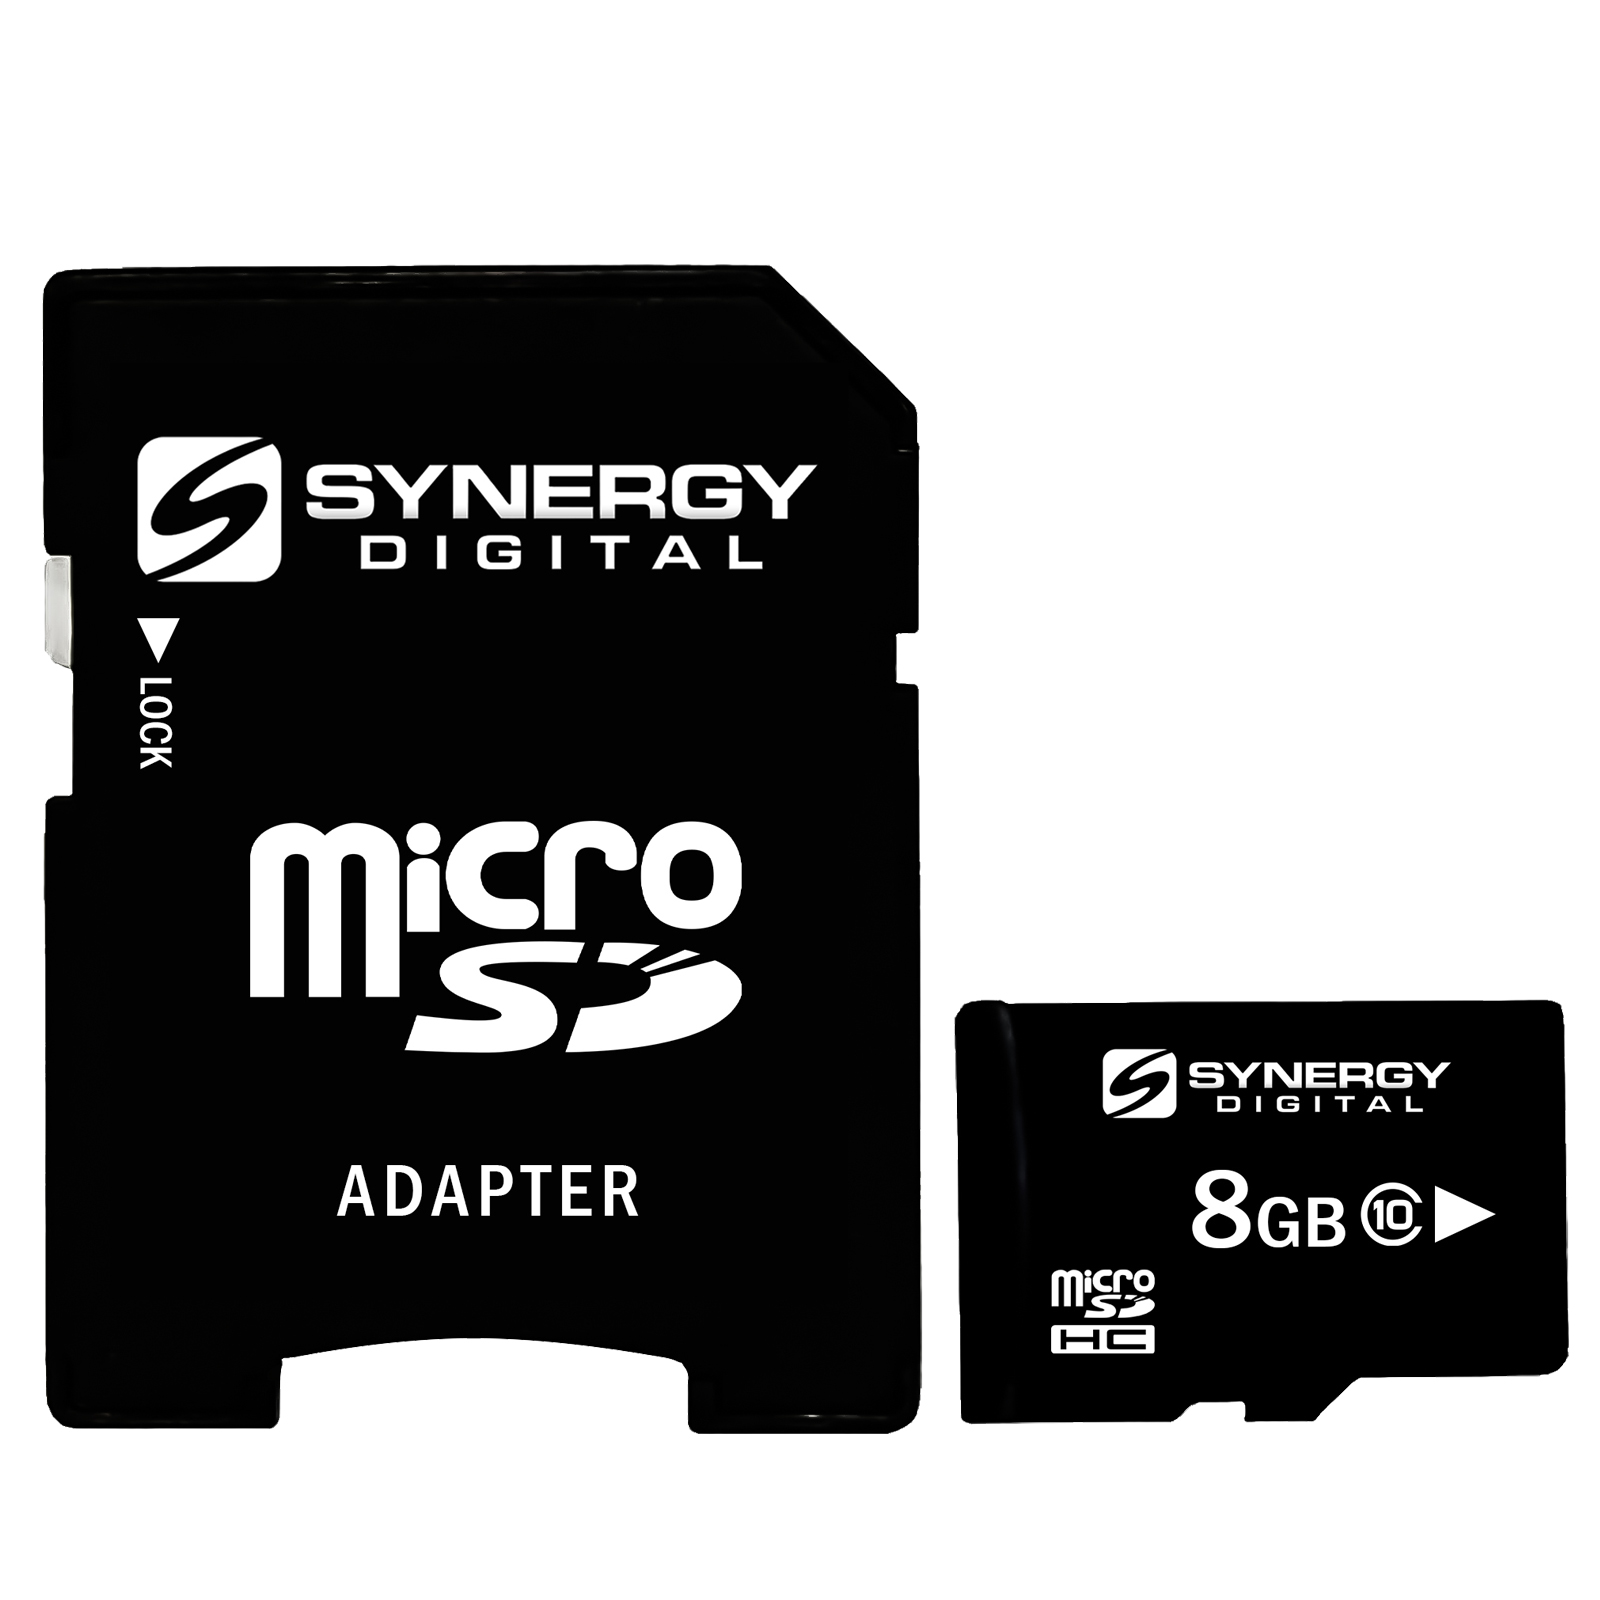 Memory Cards for Samsung MV800 Digital Camera